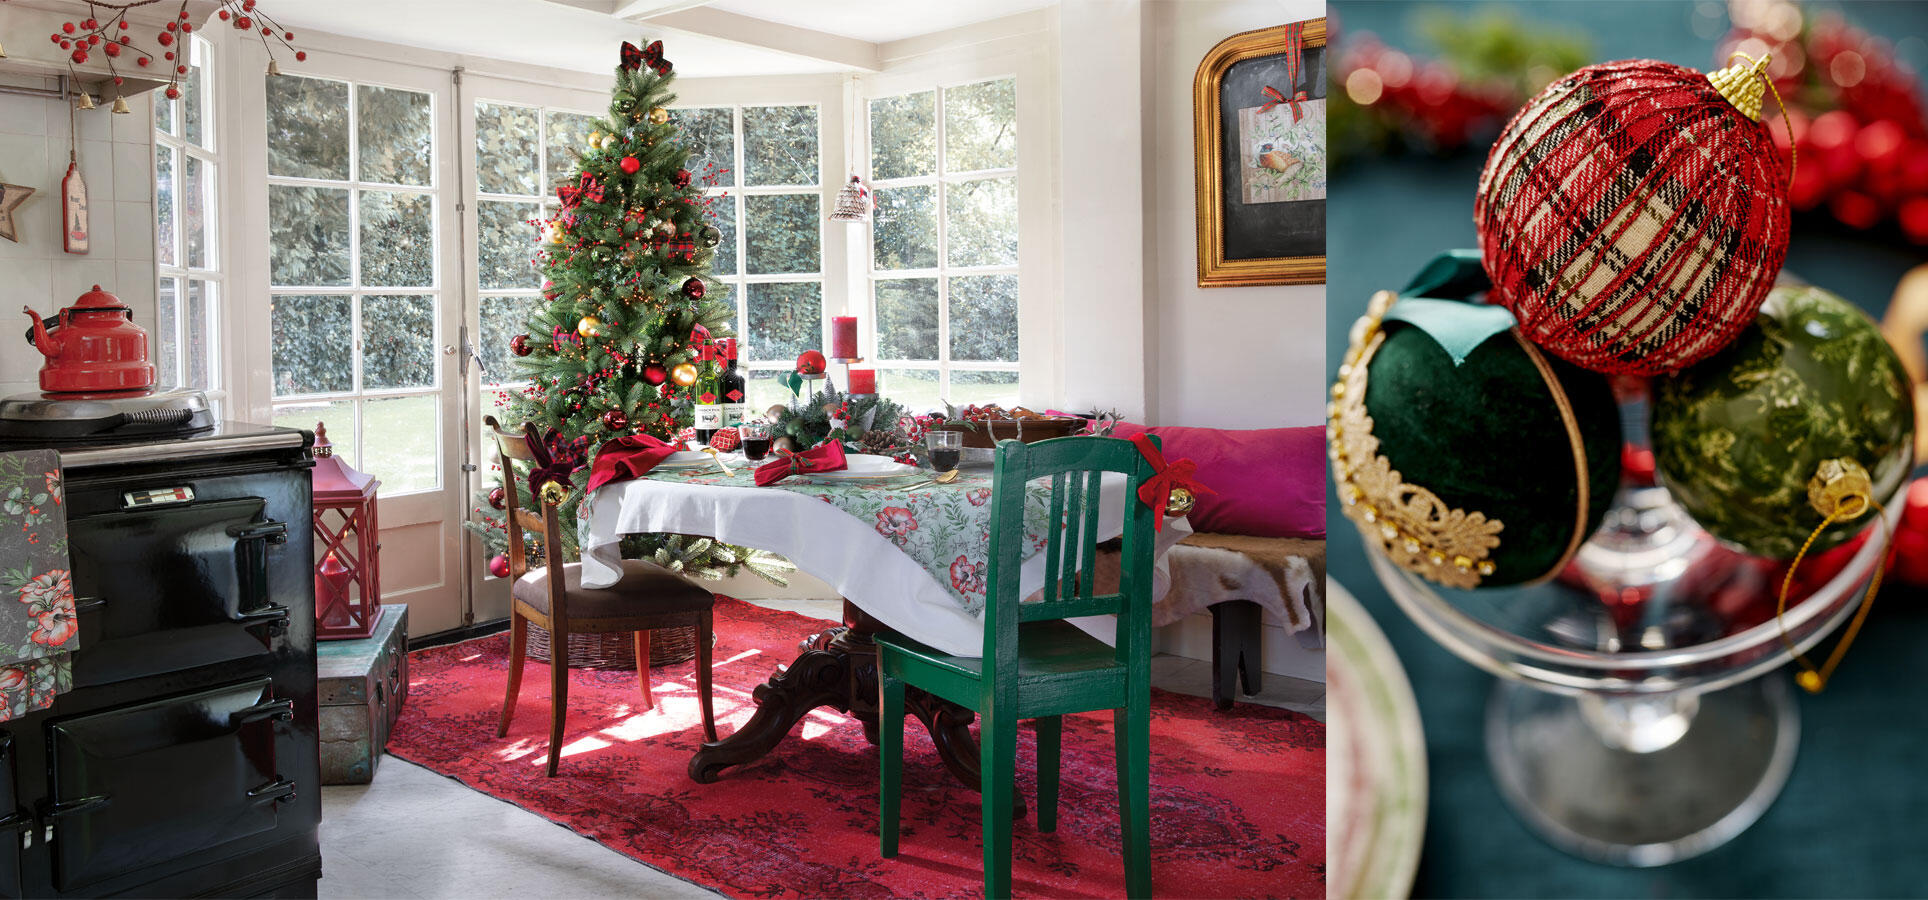 Estilo tradicional de la mesa y adornos navideños rojos y verdes